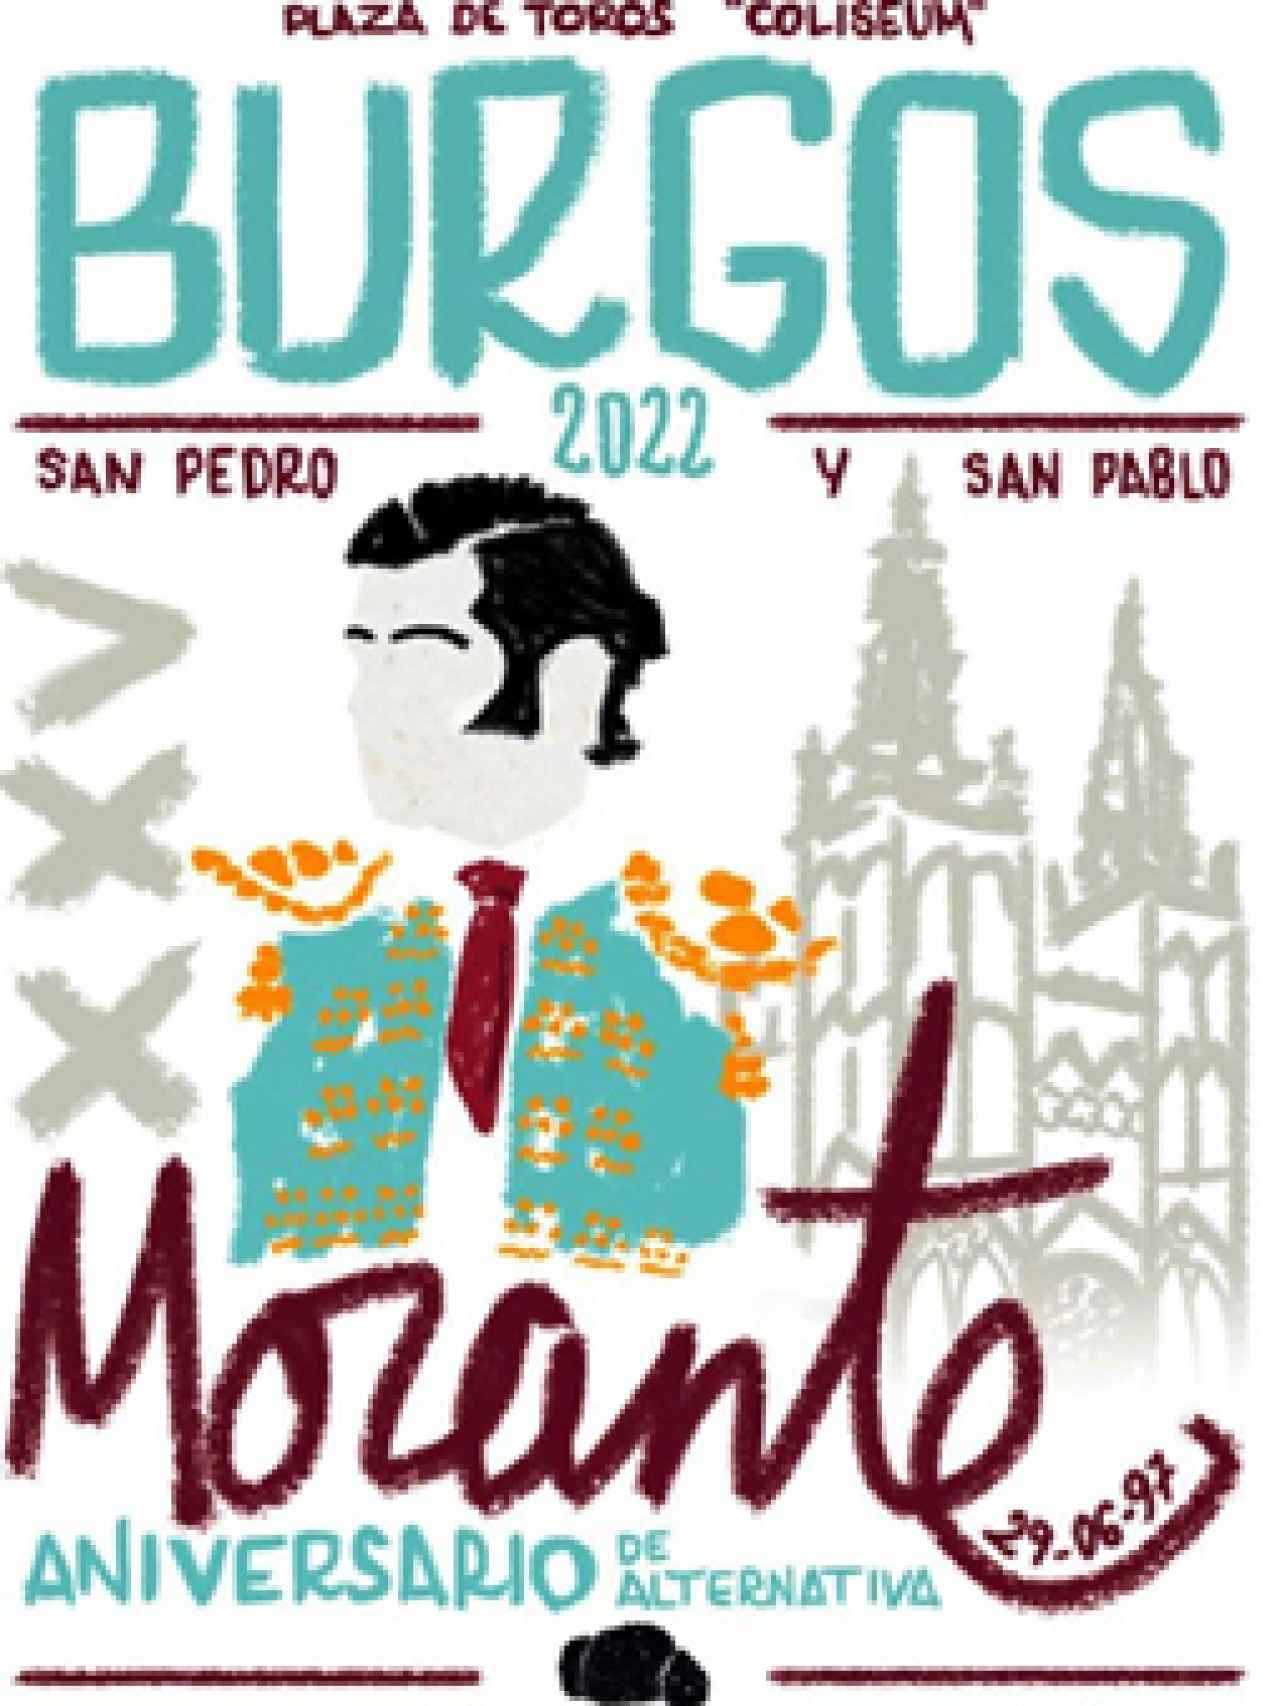 Programa de la Plaza de Toros de Burgos